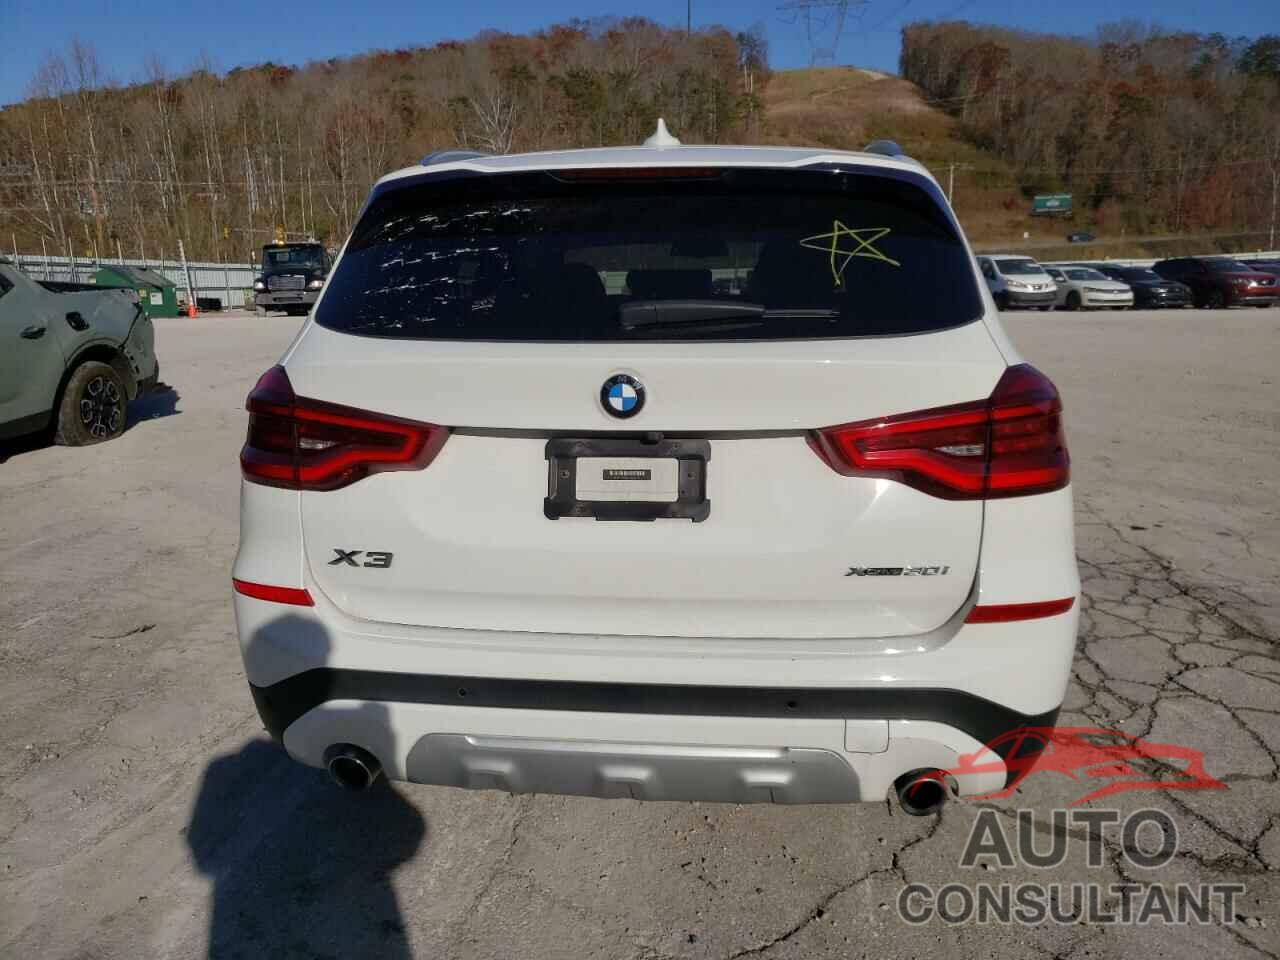 BMW X3 2021 - 5UXTY5C04M9F84677